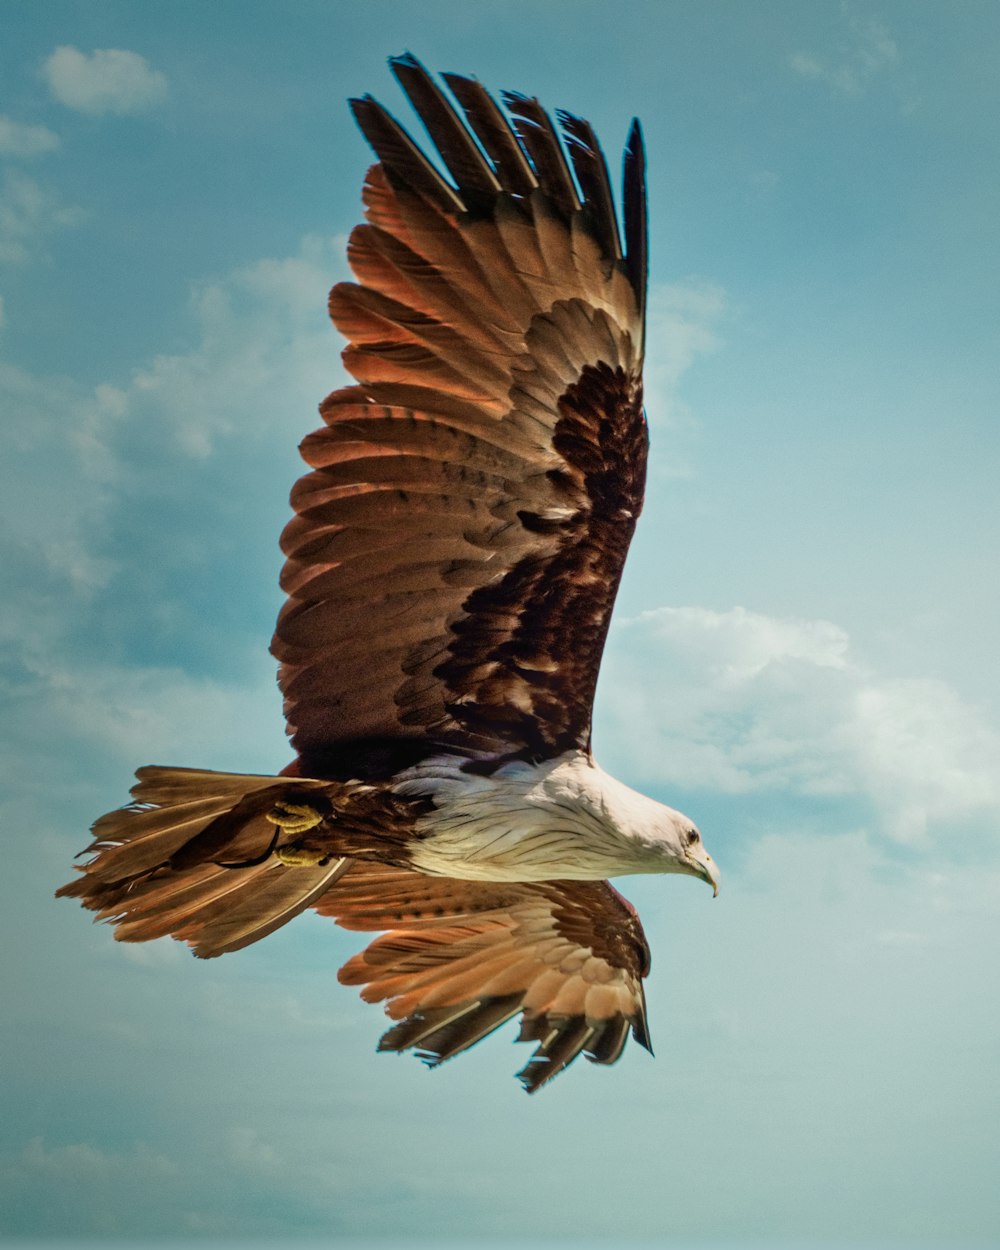 Águila marrón y blanca volando bajo el cielo azul durante el día